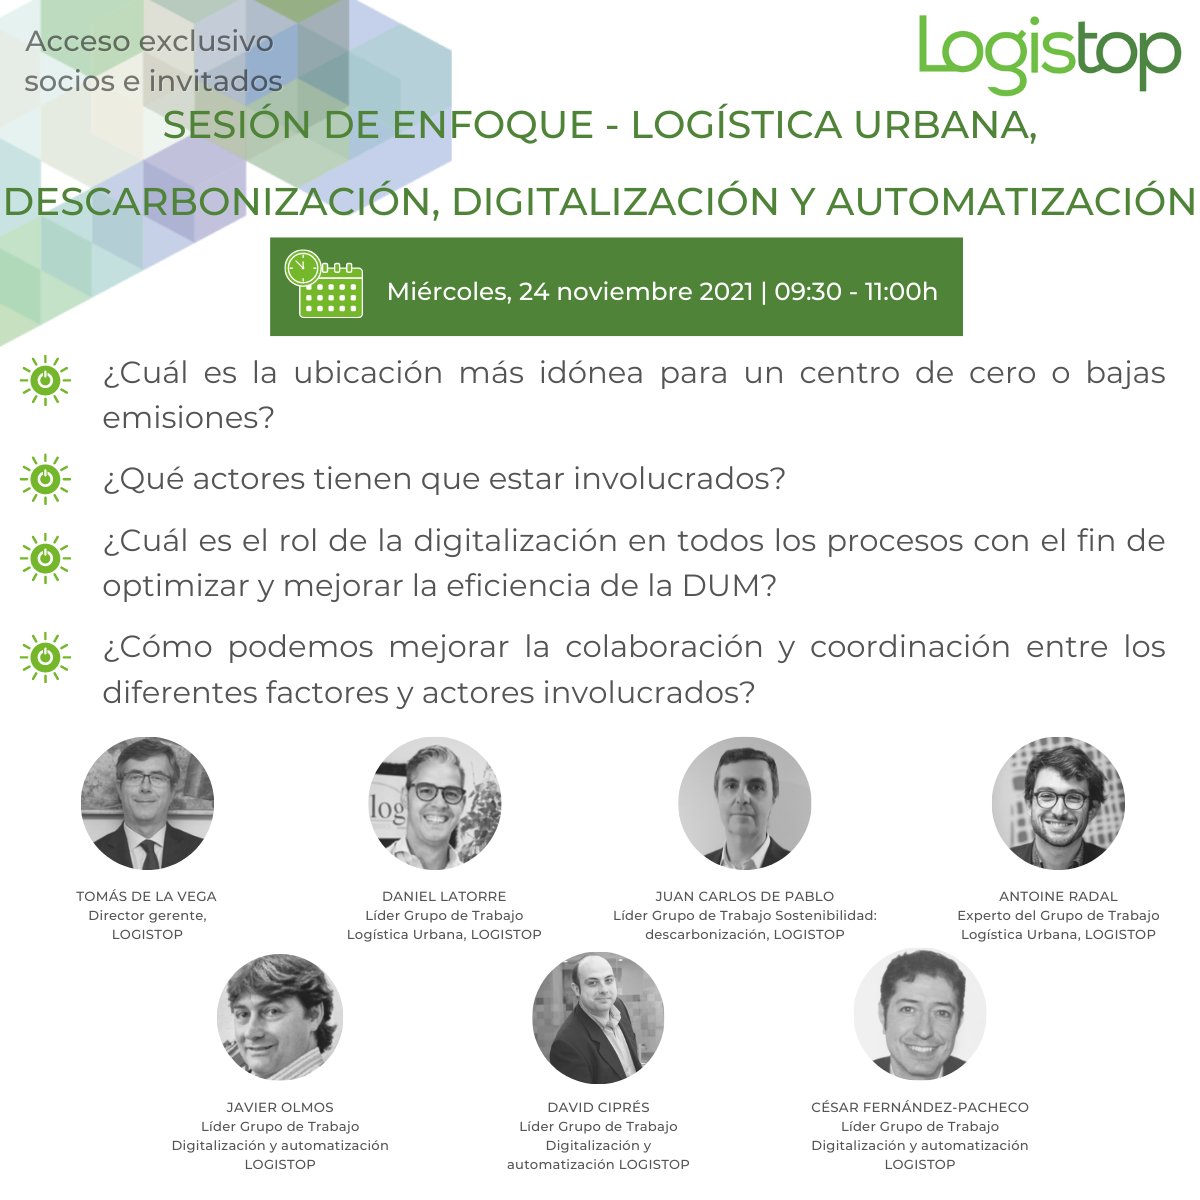 Sesión de enfoque Logistop Descarbonización y digitalización de la logística urbana